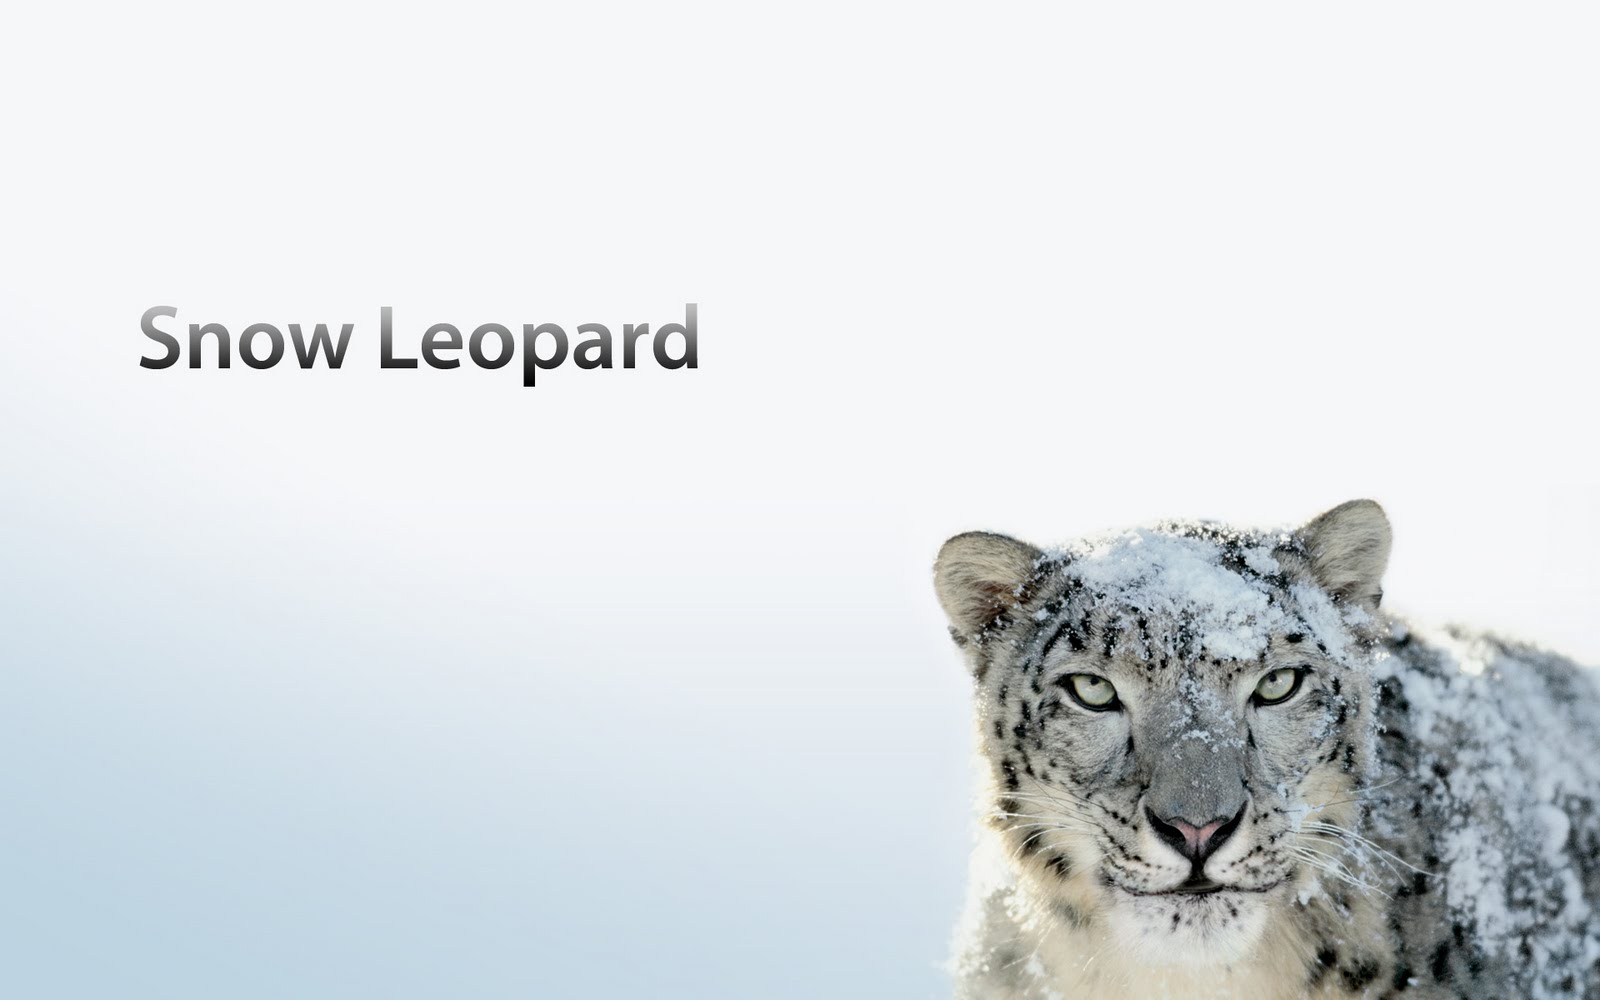 Mac Os X Snow Leopard Widescreen High Definition Wallpaper